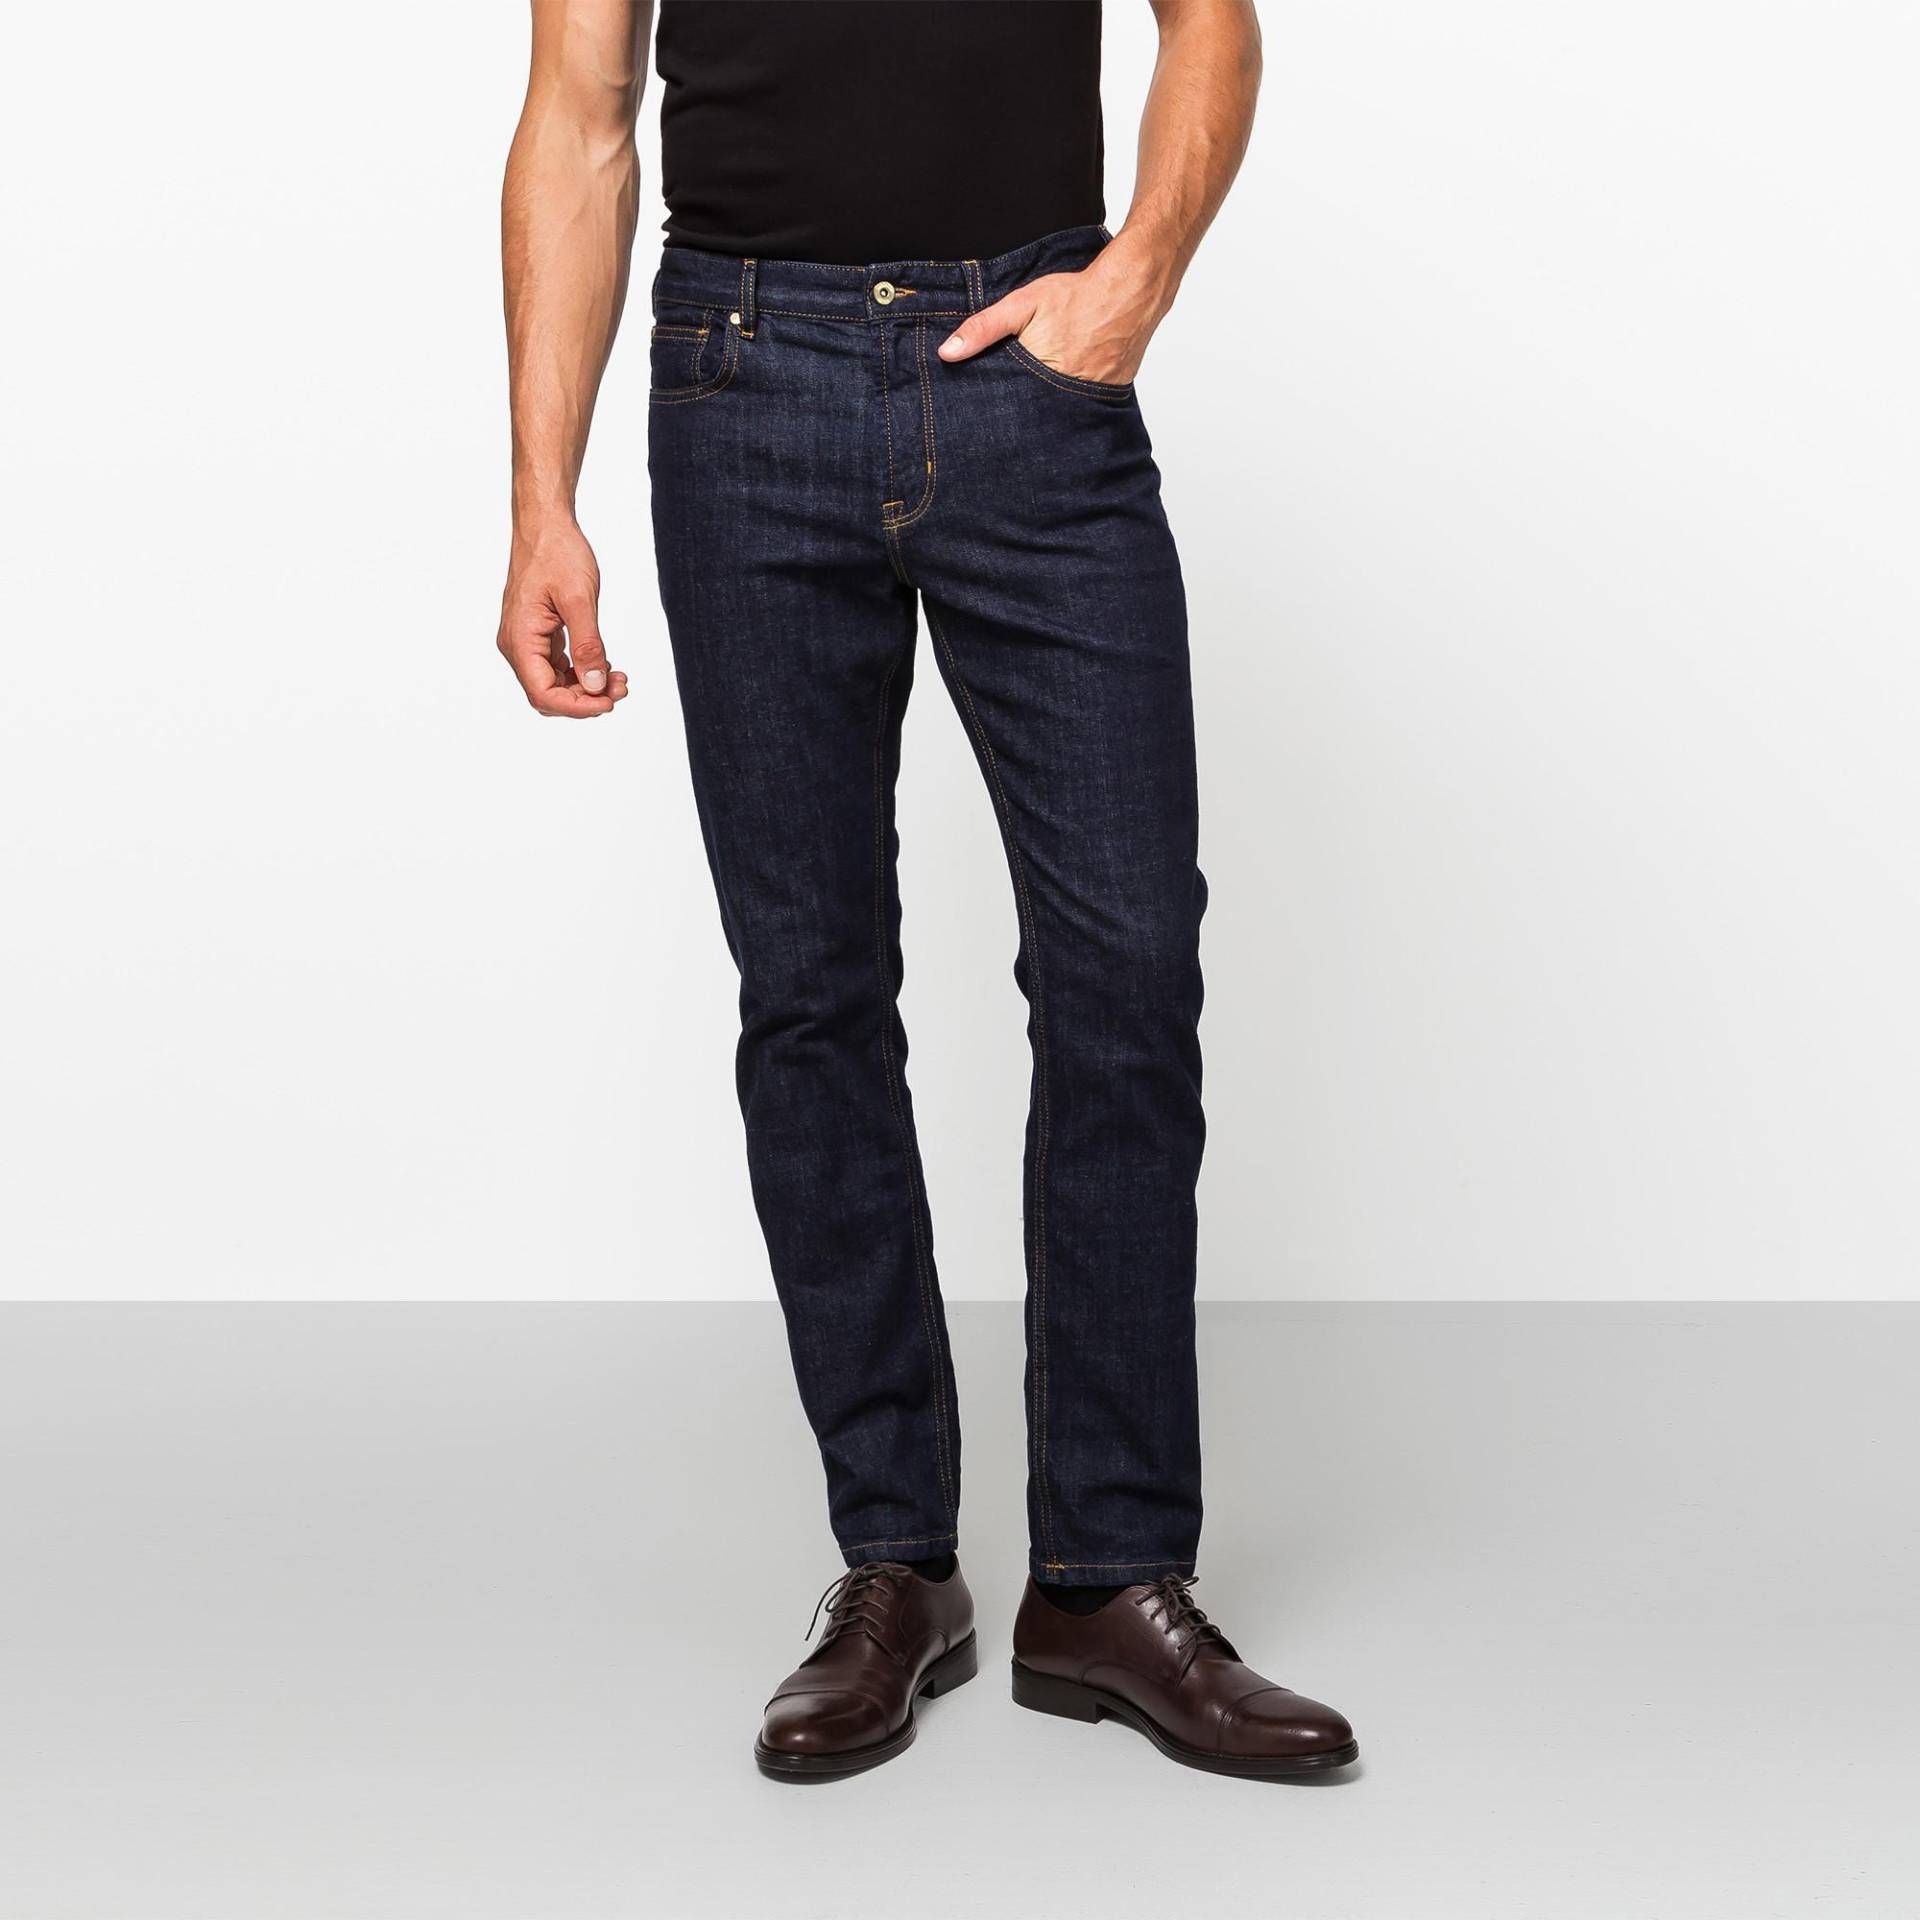 Jeans, Slim Fit Herren Blau Denim Dunkel L34/W33 von Manor Man